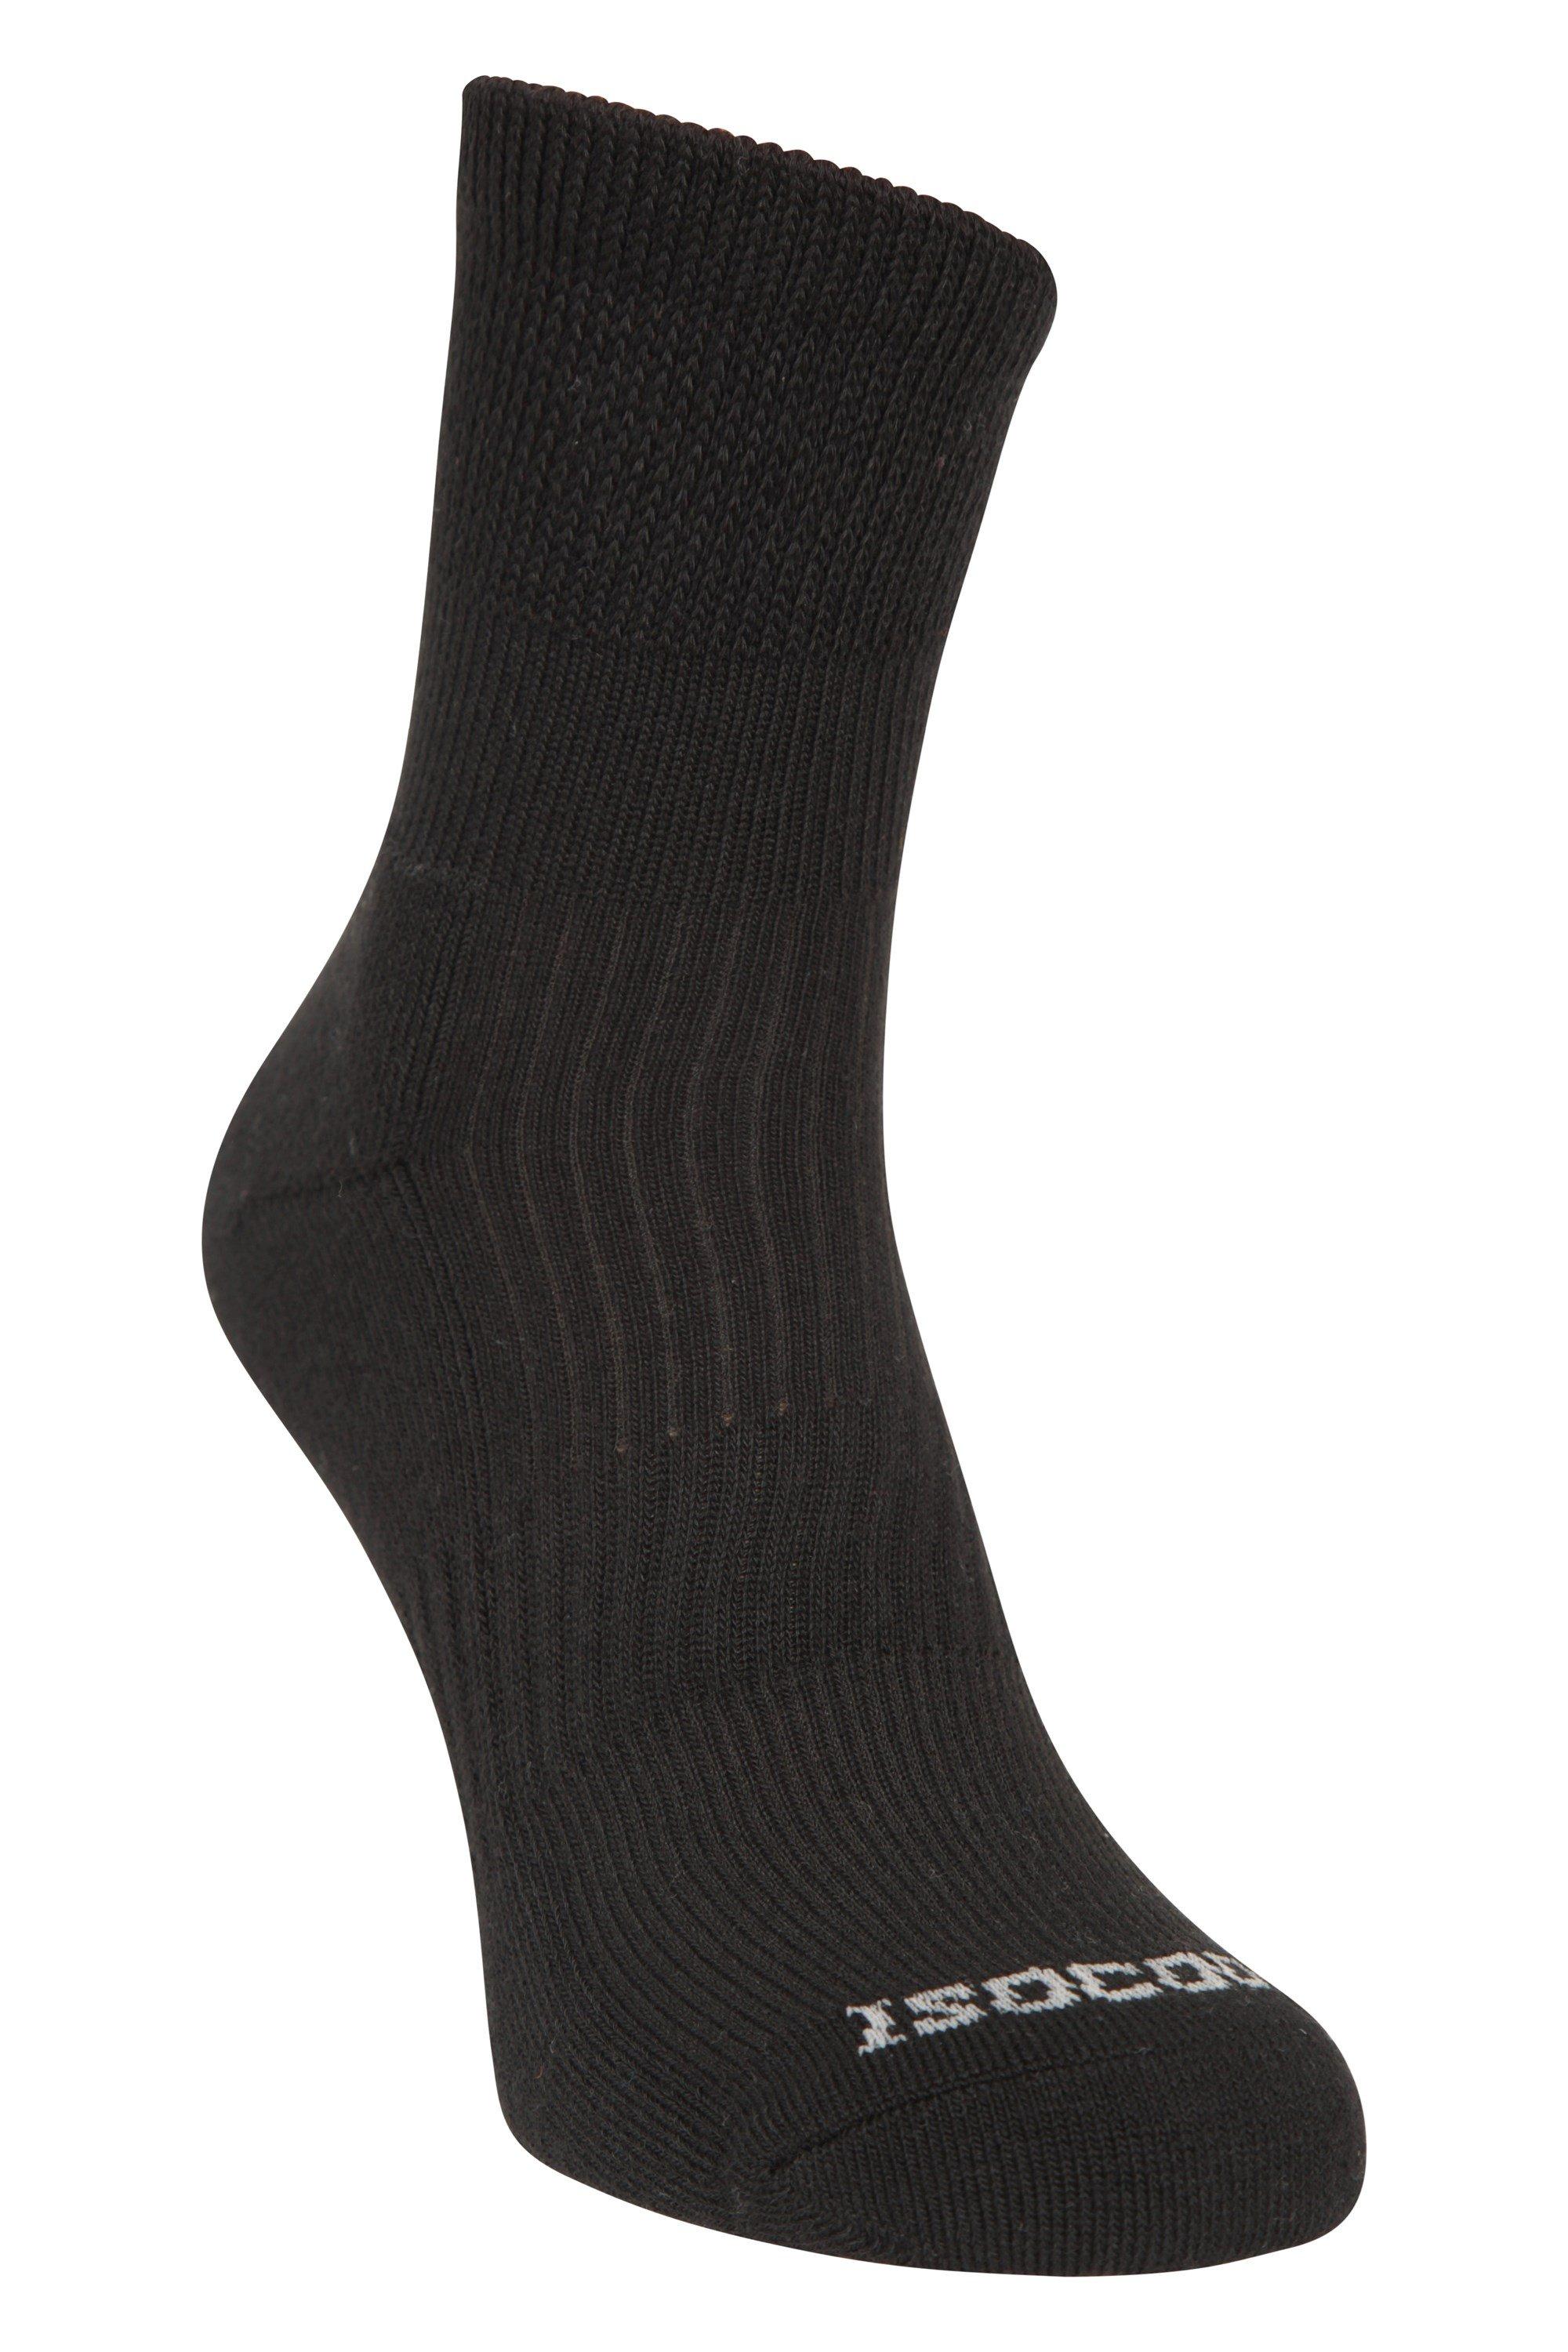 IsoCool Hiker Quarter Length Socks Soft Breathable